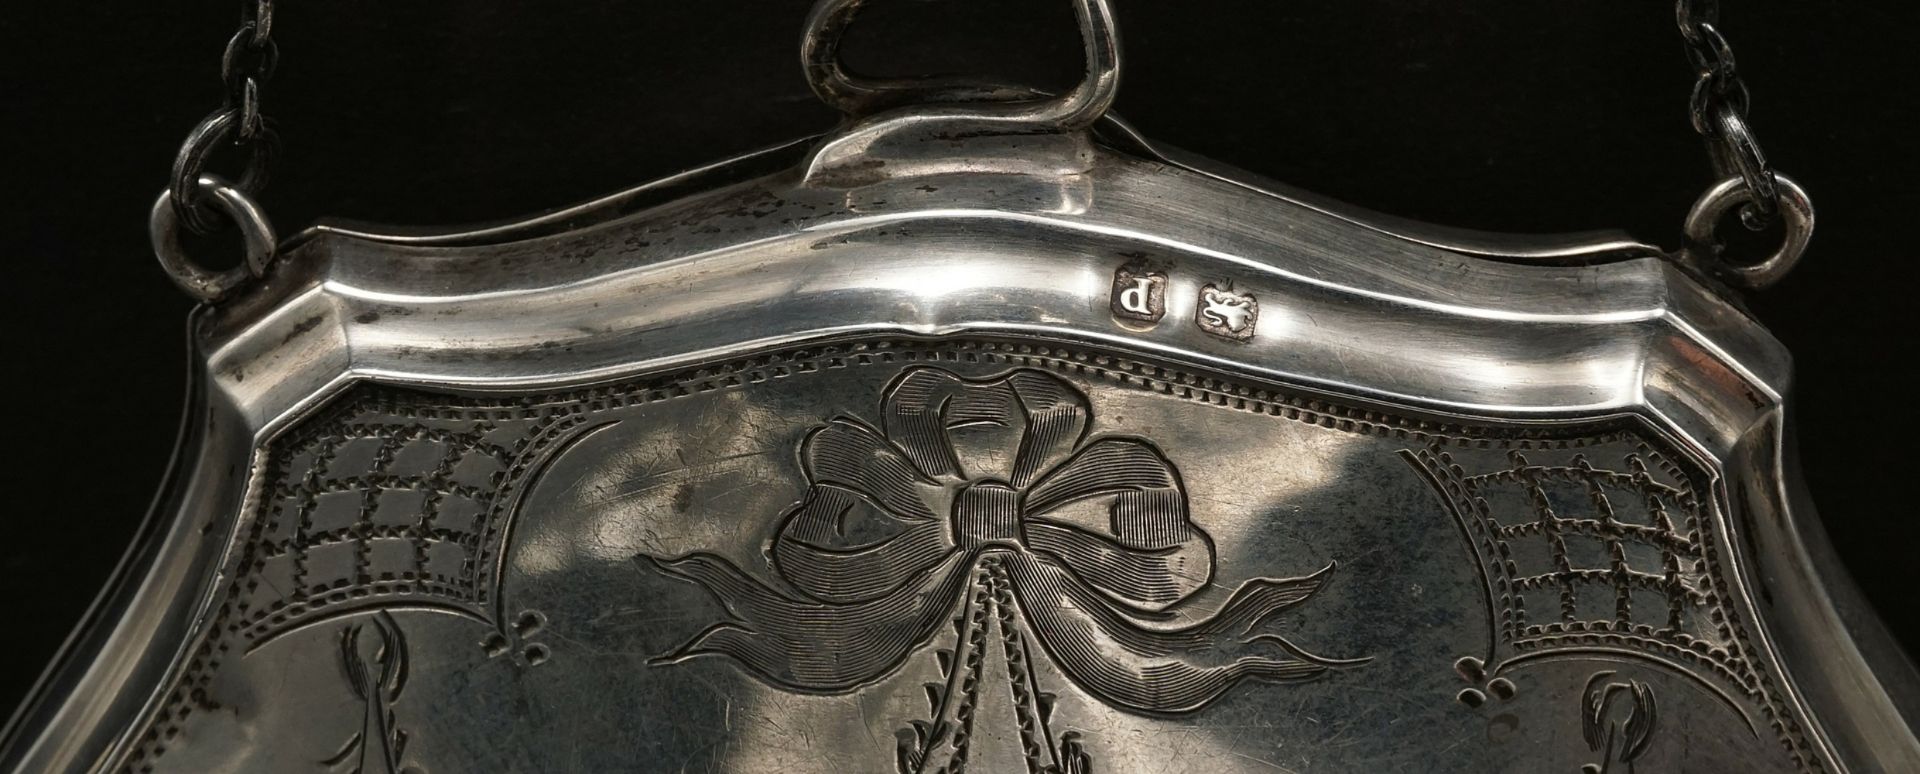 Silver wallet / bag, Art Nouveau - Image 4 of 6